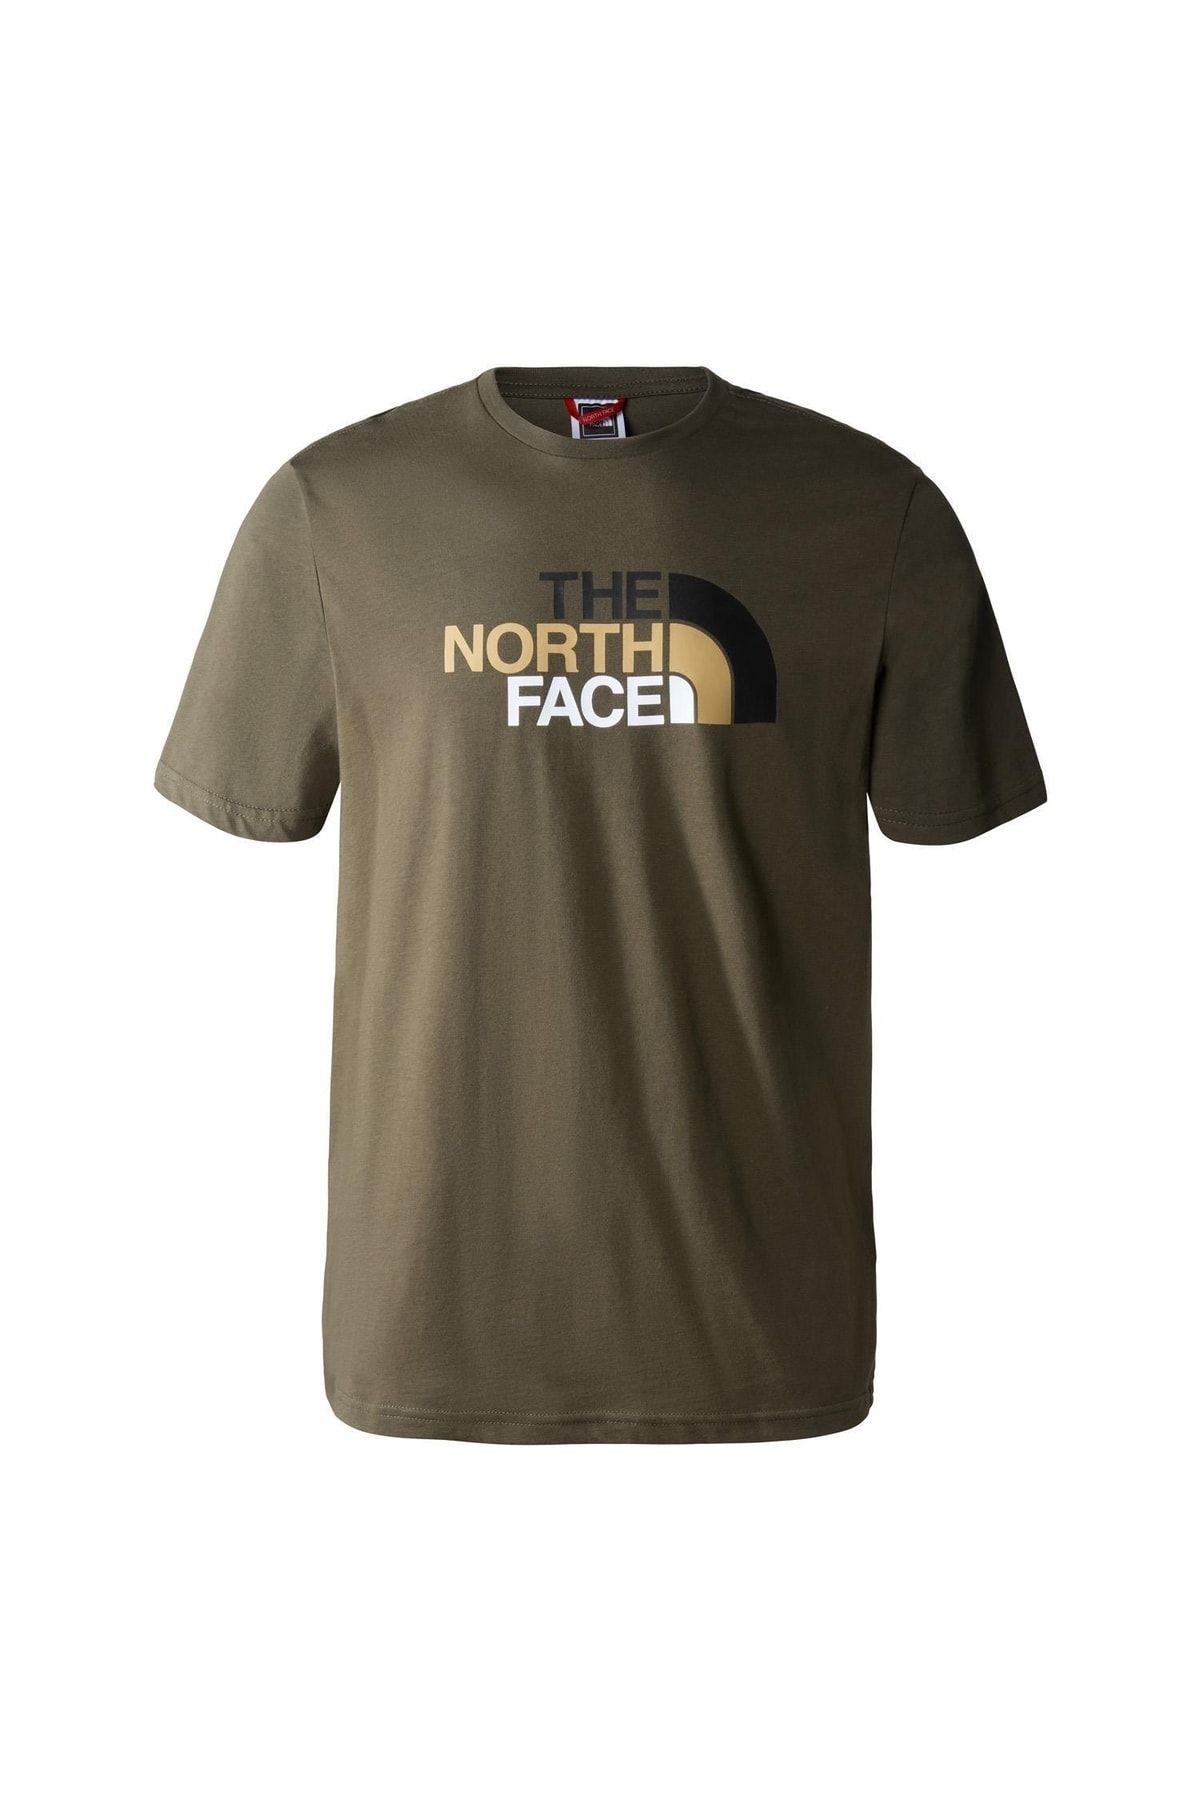 The North Face M S/s Easy Tee - Eu Erkek T-shirt Nf0a2tx321l1